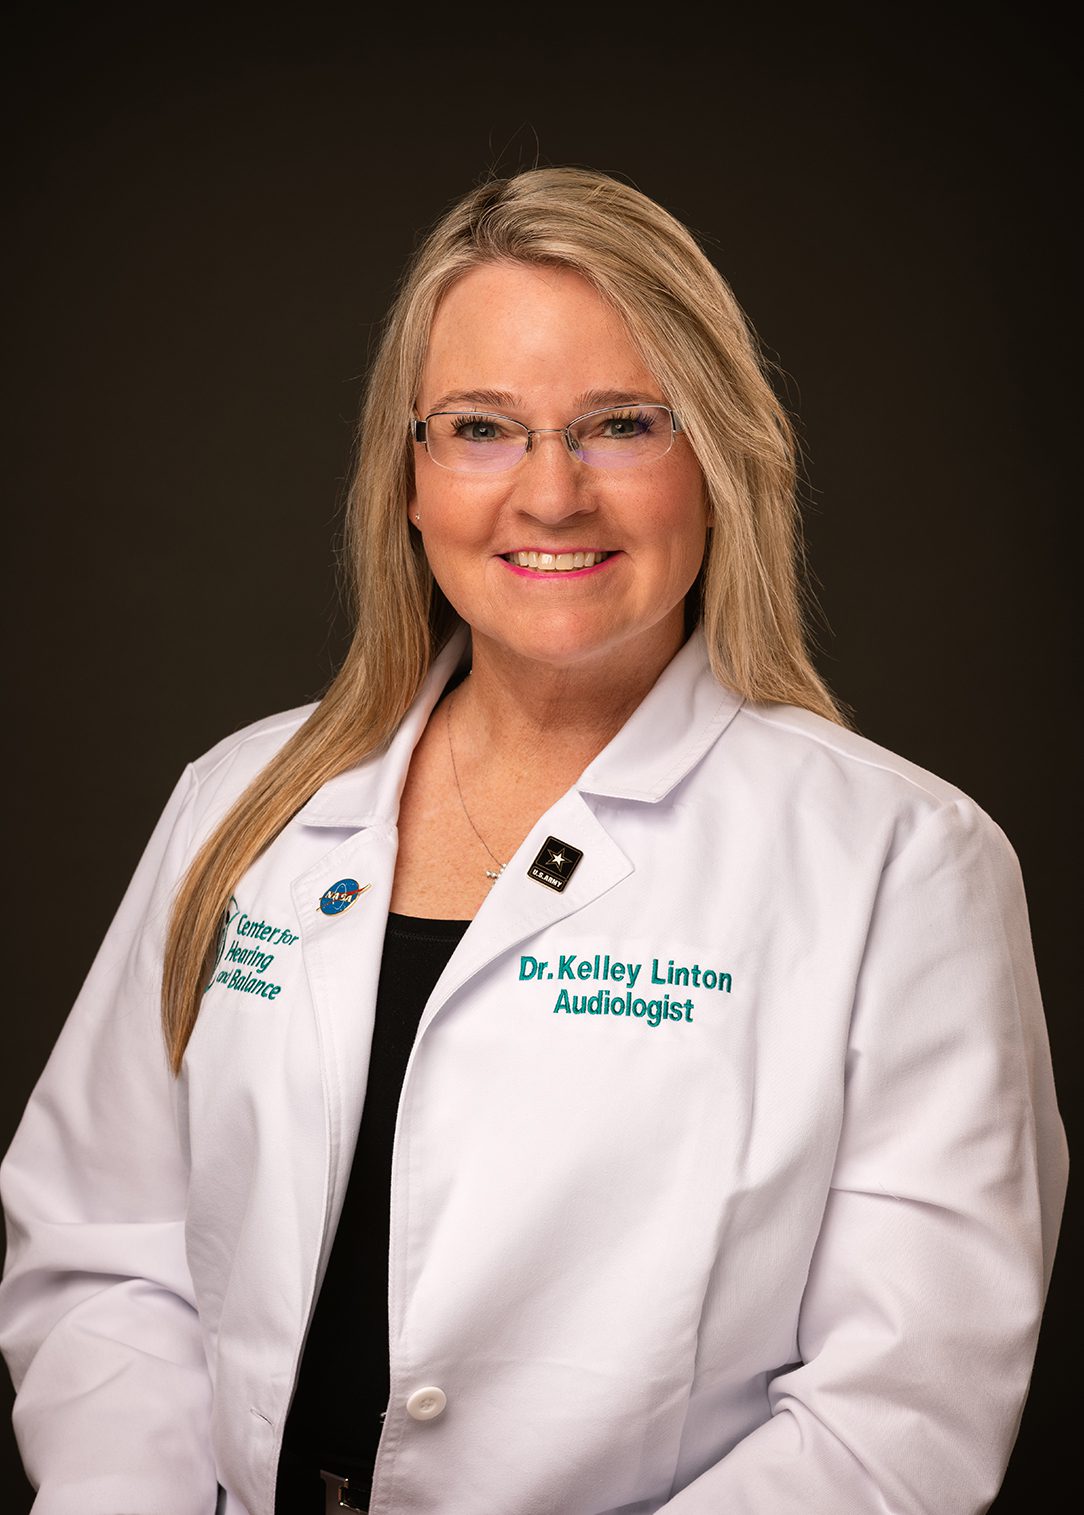 Dr. Kelley Linton